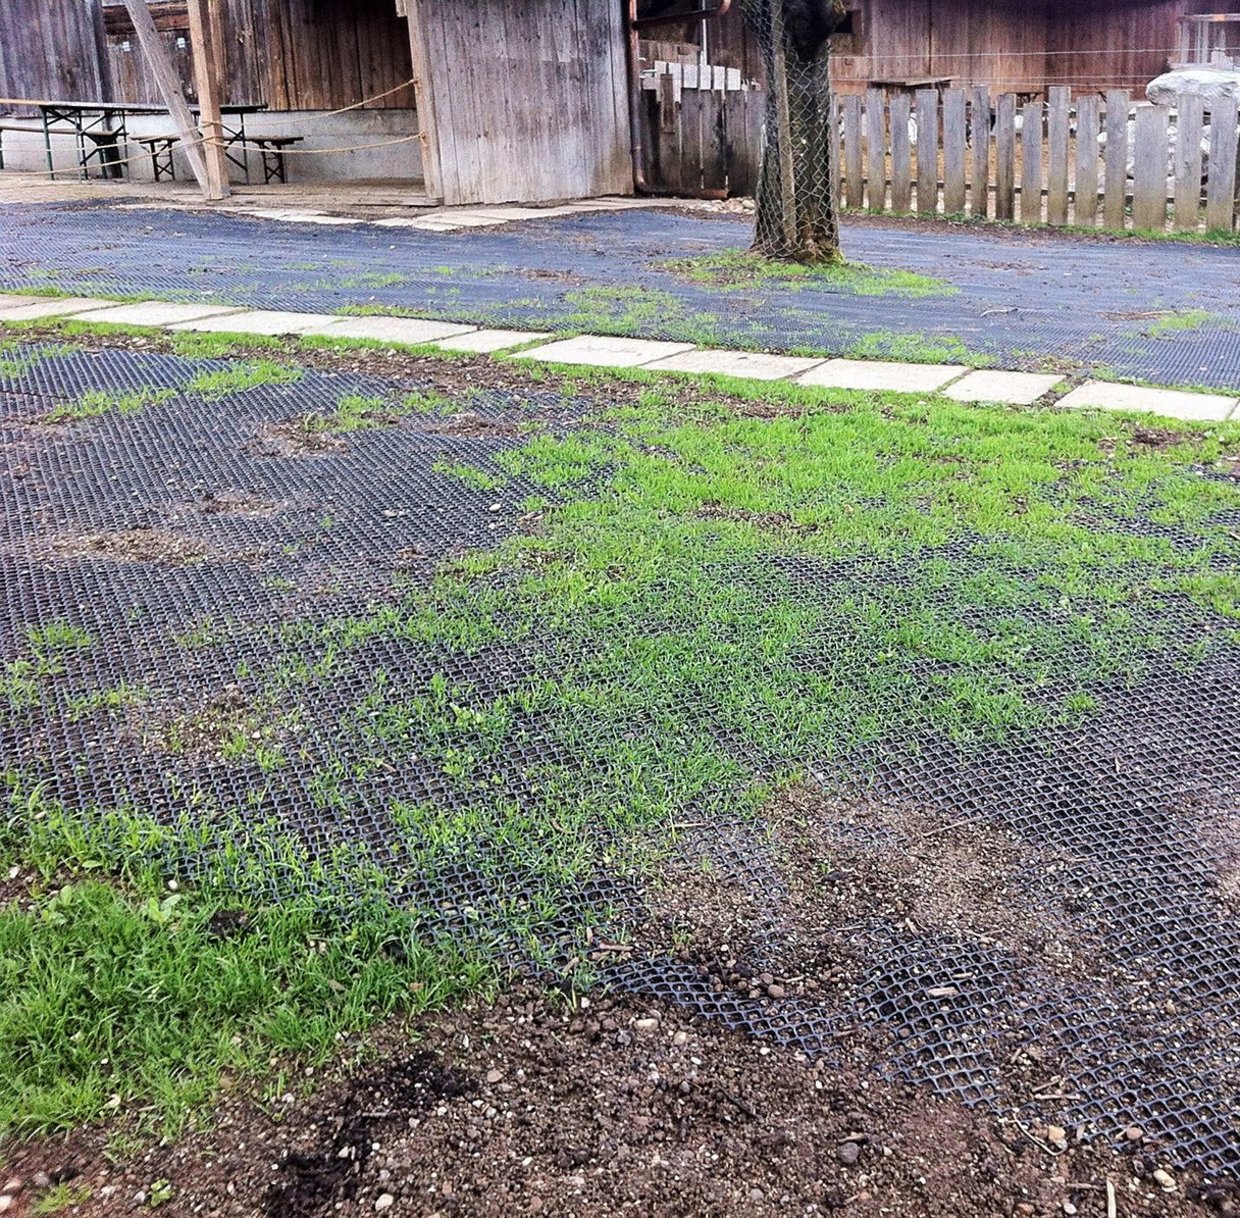 Rasenschutz mit TurfProtecta: einfach ausrollen, Gras wächst durch Maschen